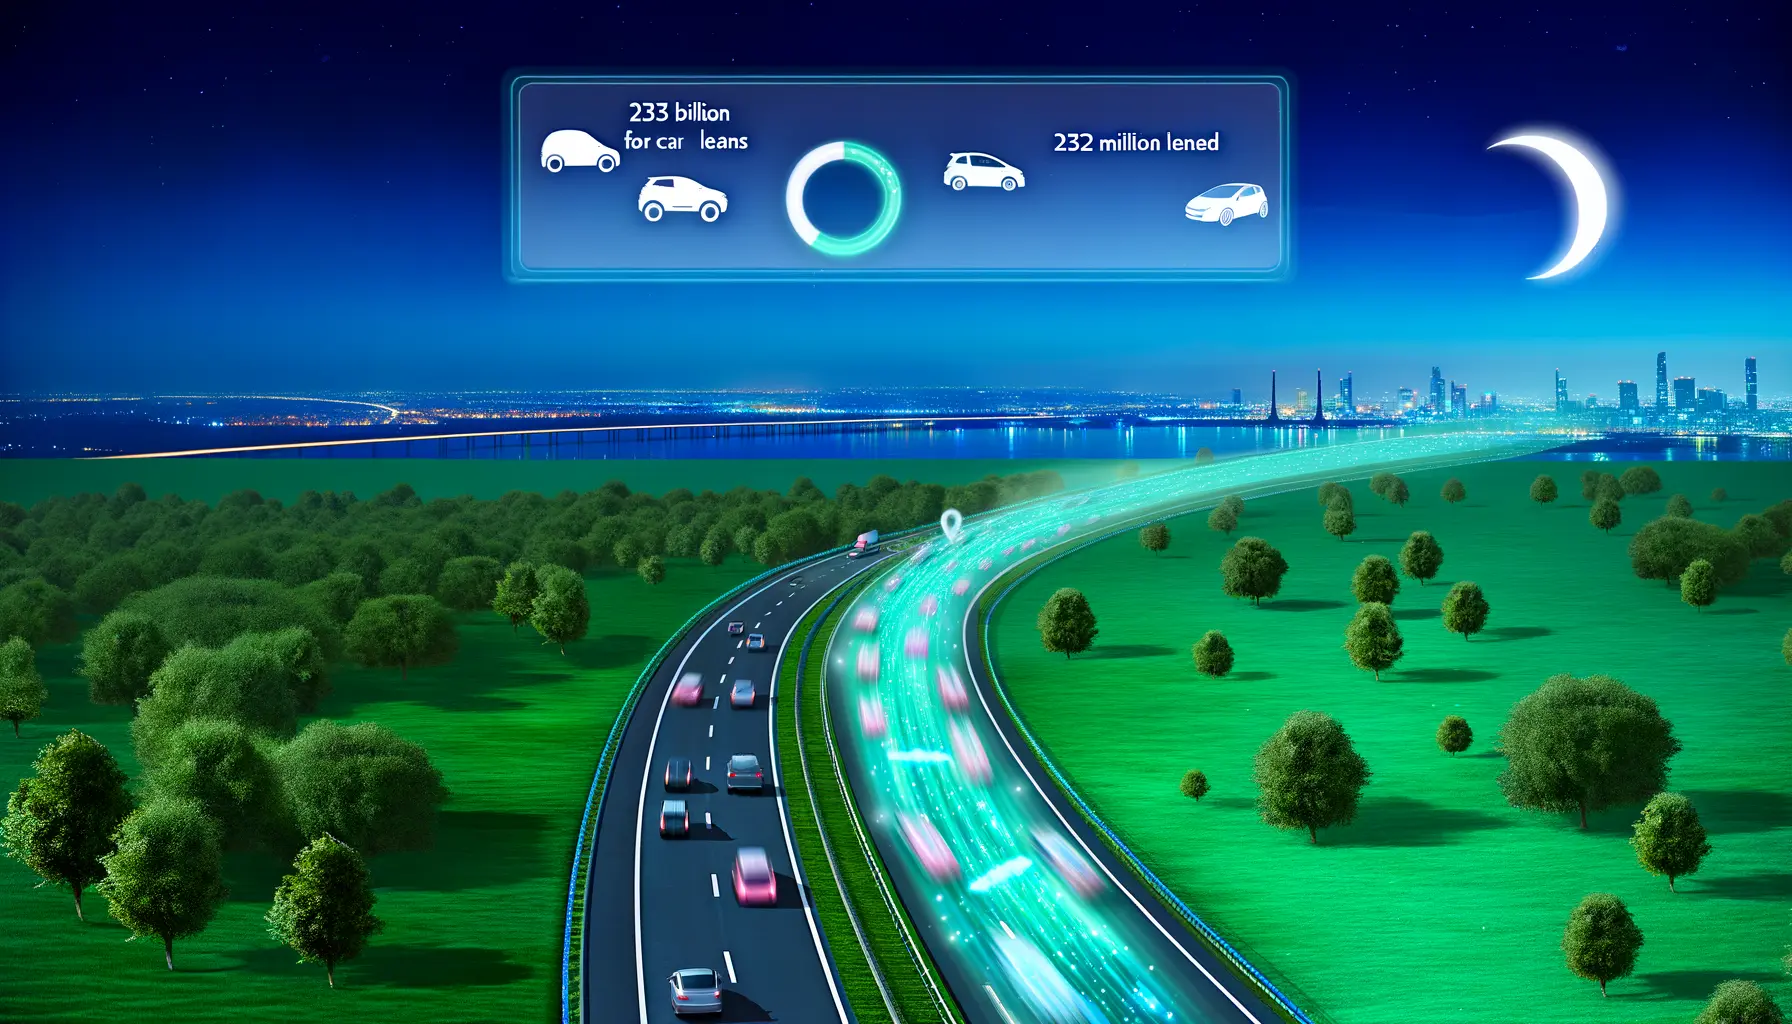 Futuristische Autobahn in grüner Landschaft